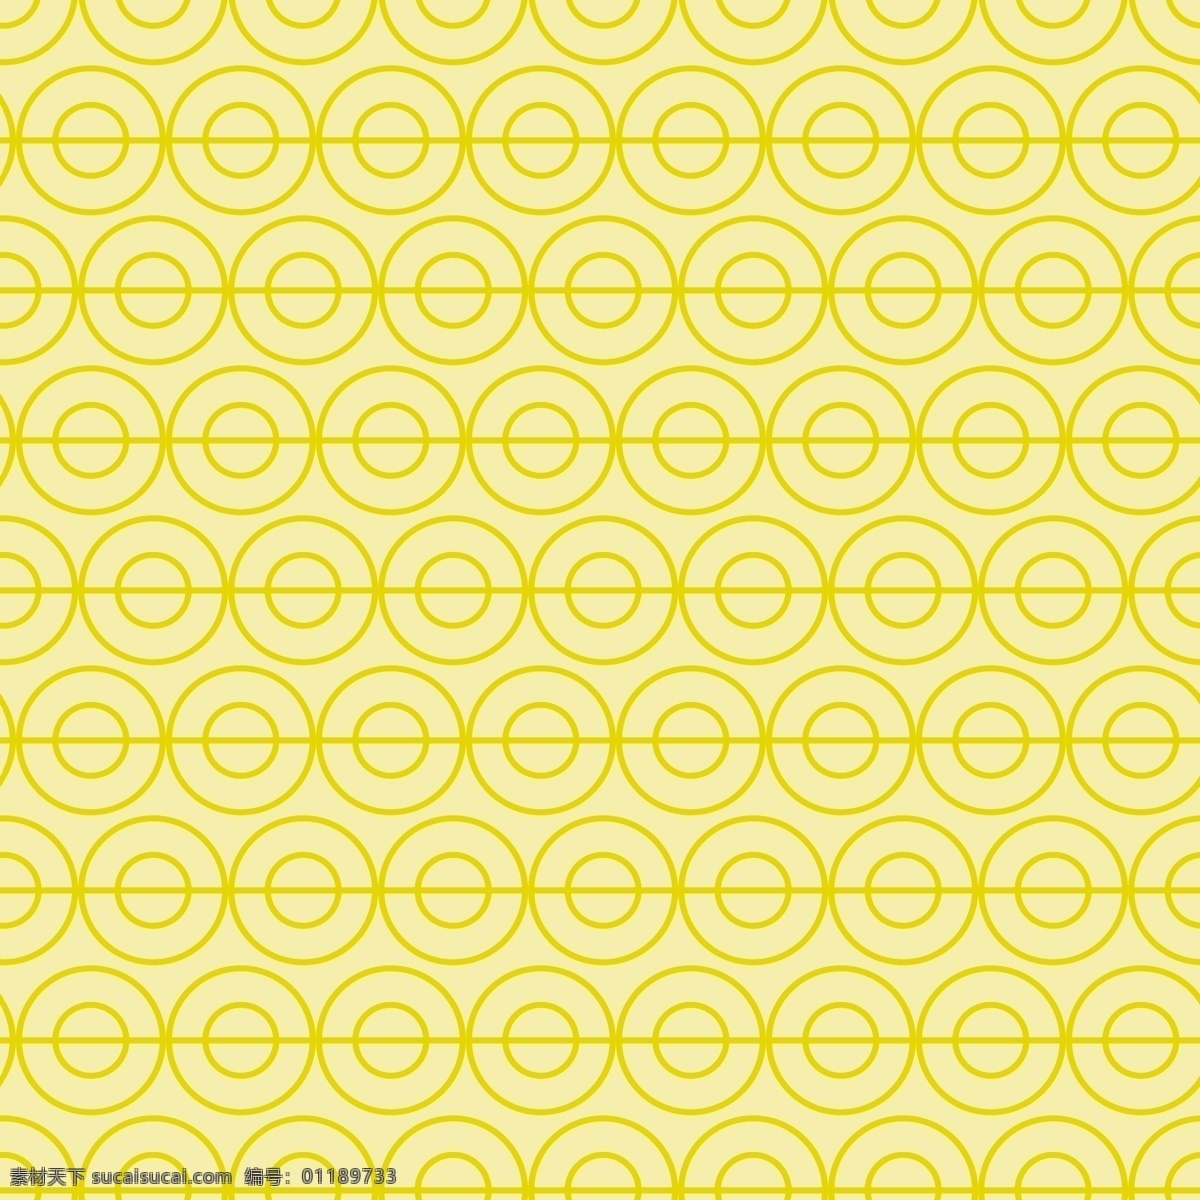 圆圈底纹 创意 圆圈 背景 底纹 黄色